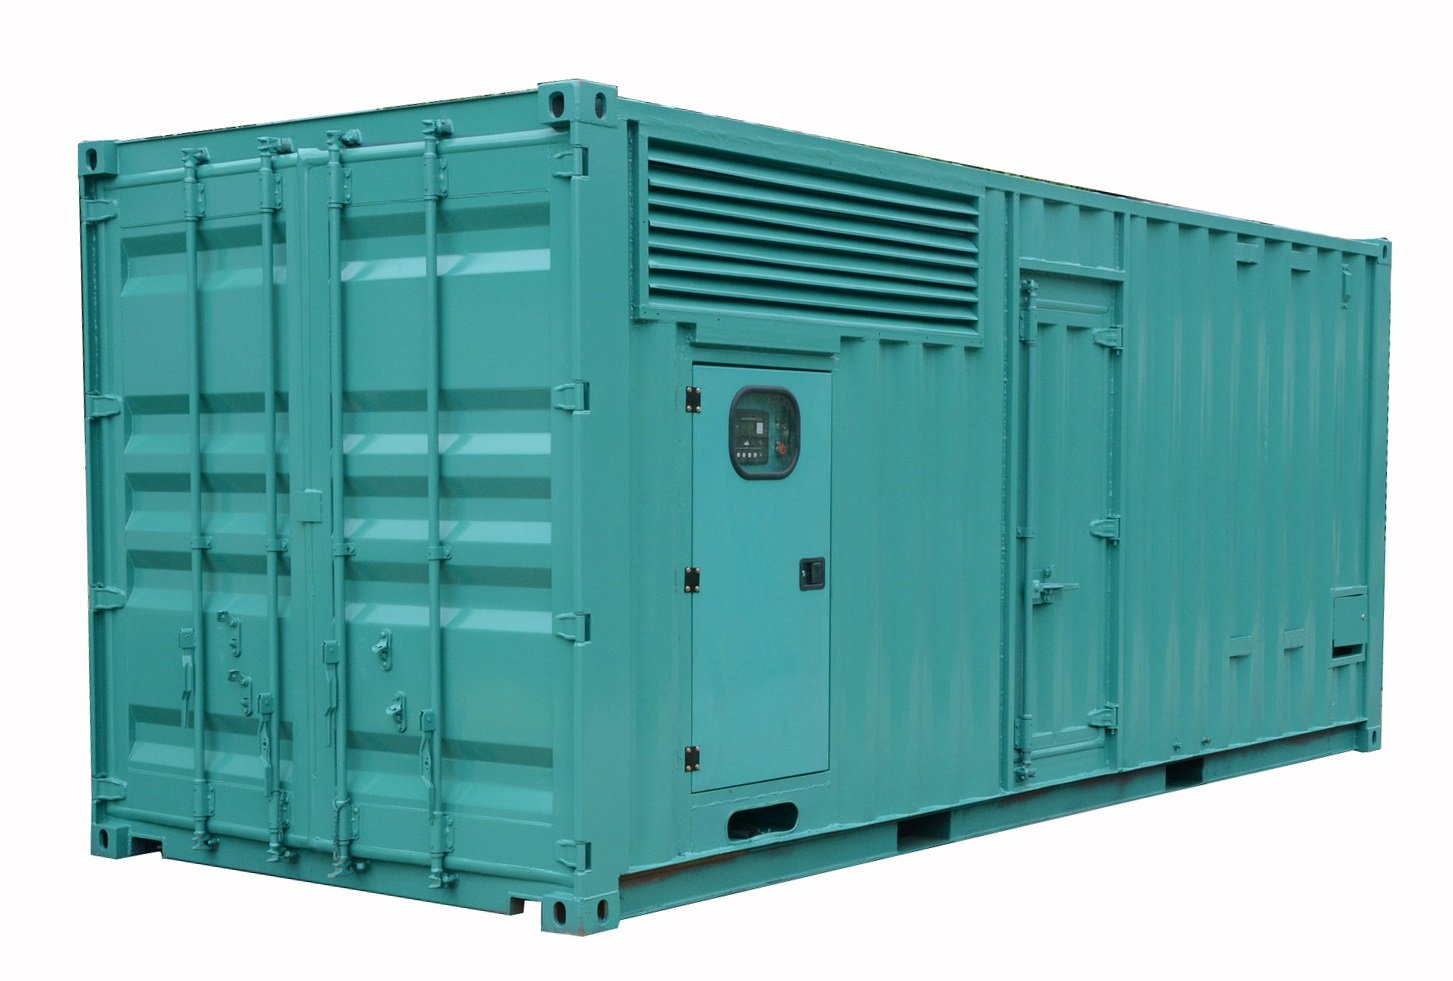 1000KVA dieselgenerator met geluiddichte luifel gemaakt door standaard 20ftcontainer